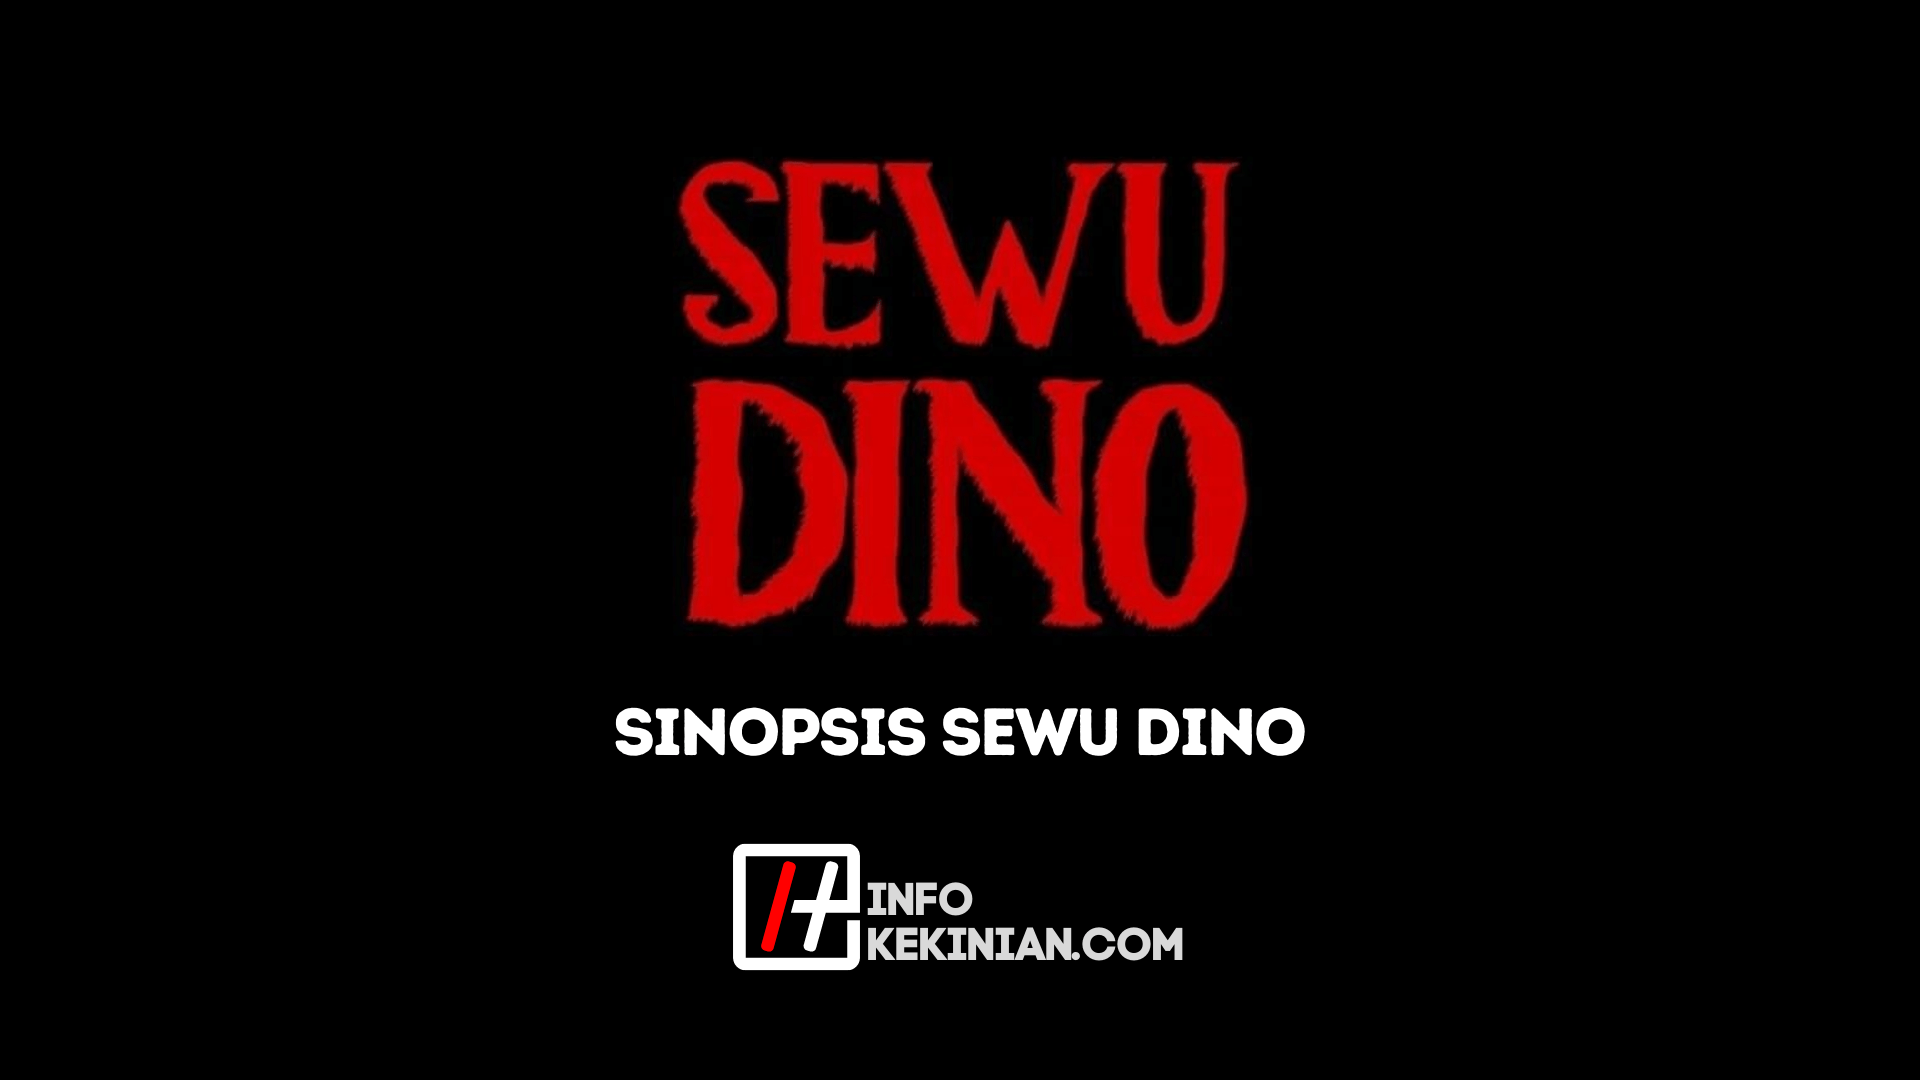 Inhaltsangabe Sewu Dino